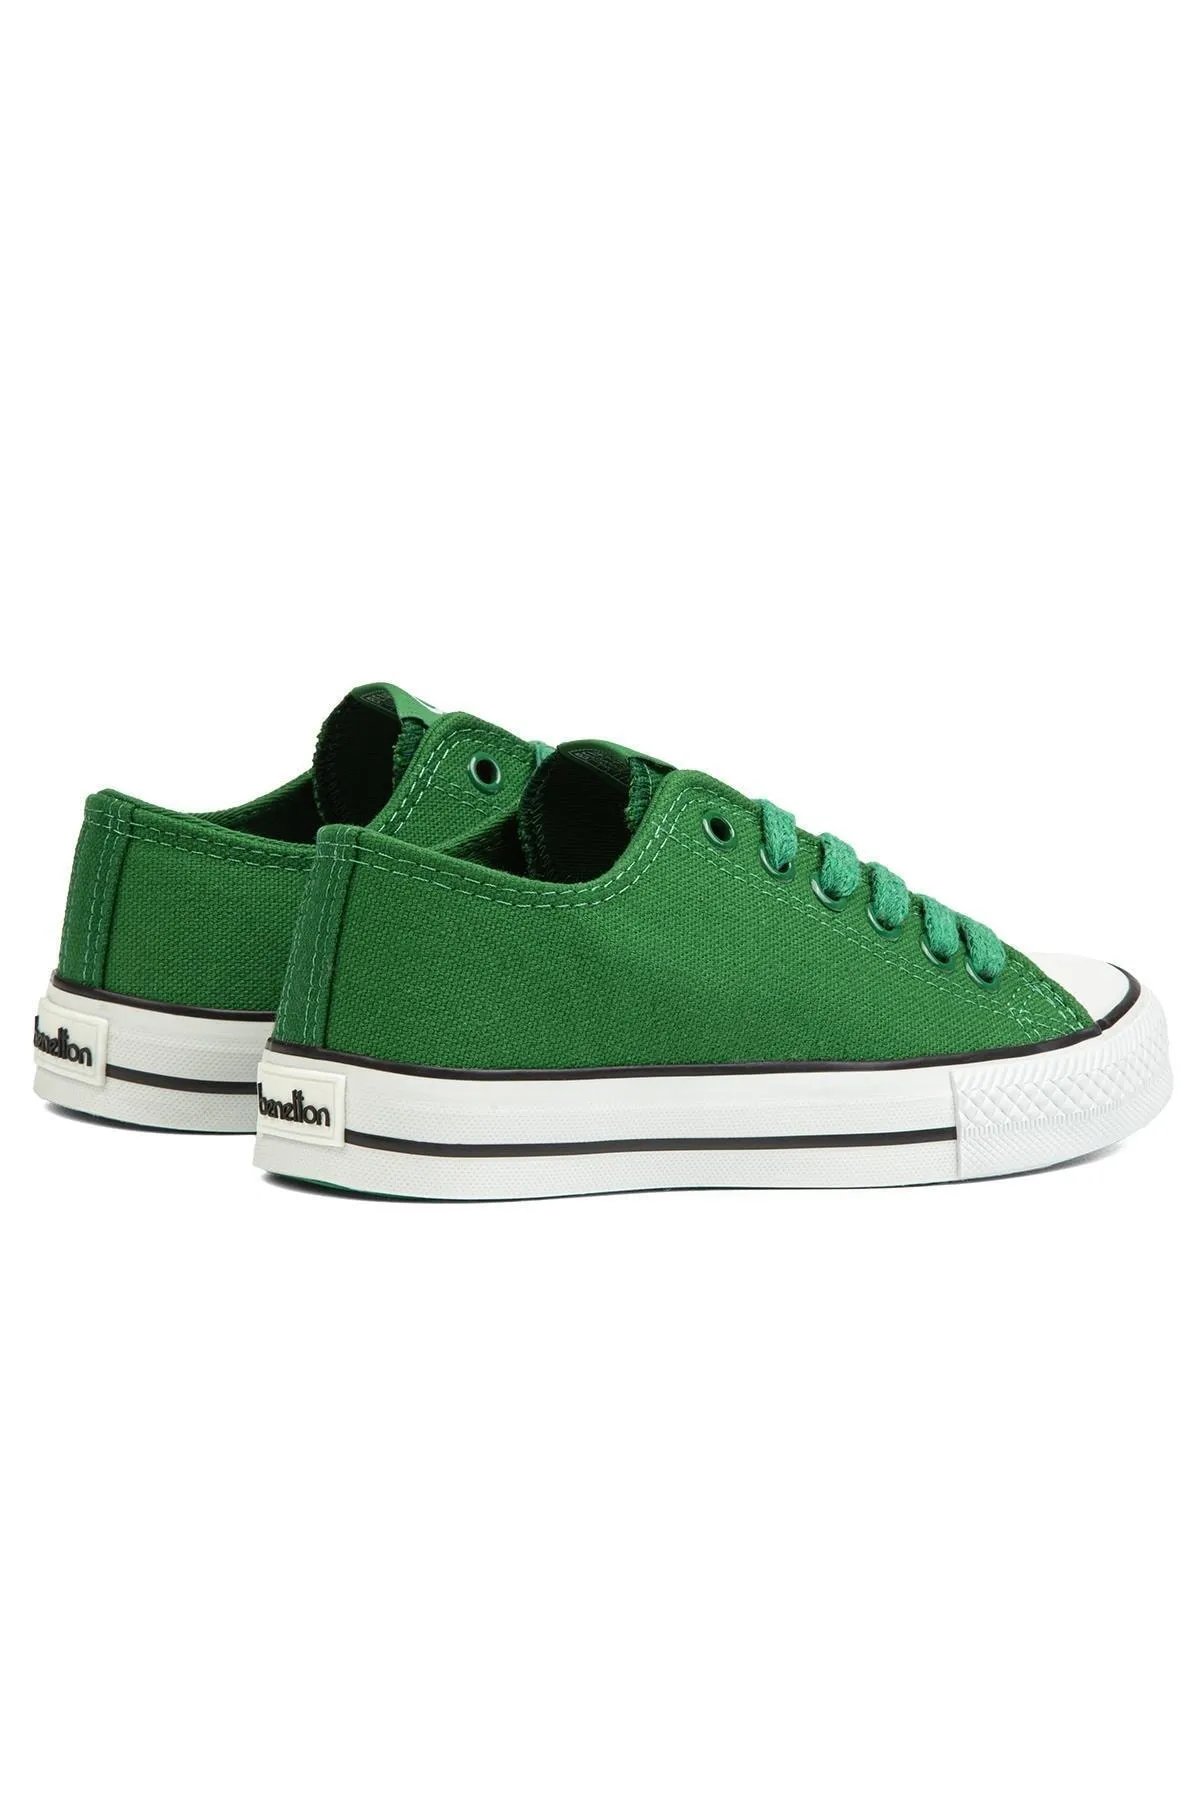 Kadın Spor Ayakkabı BN-30196-Yeşil